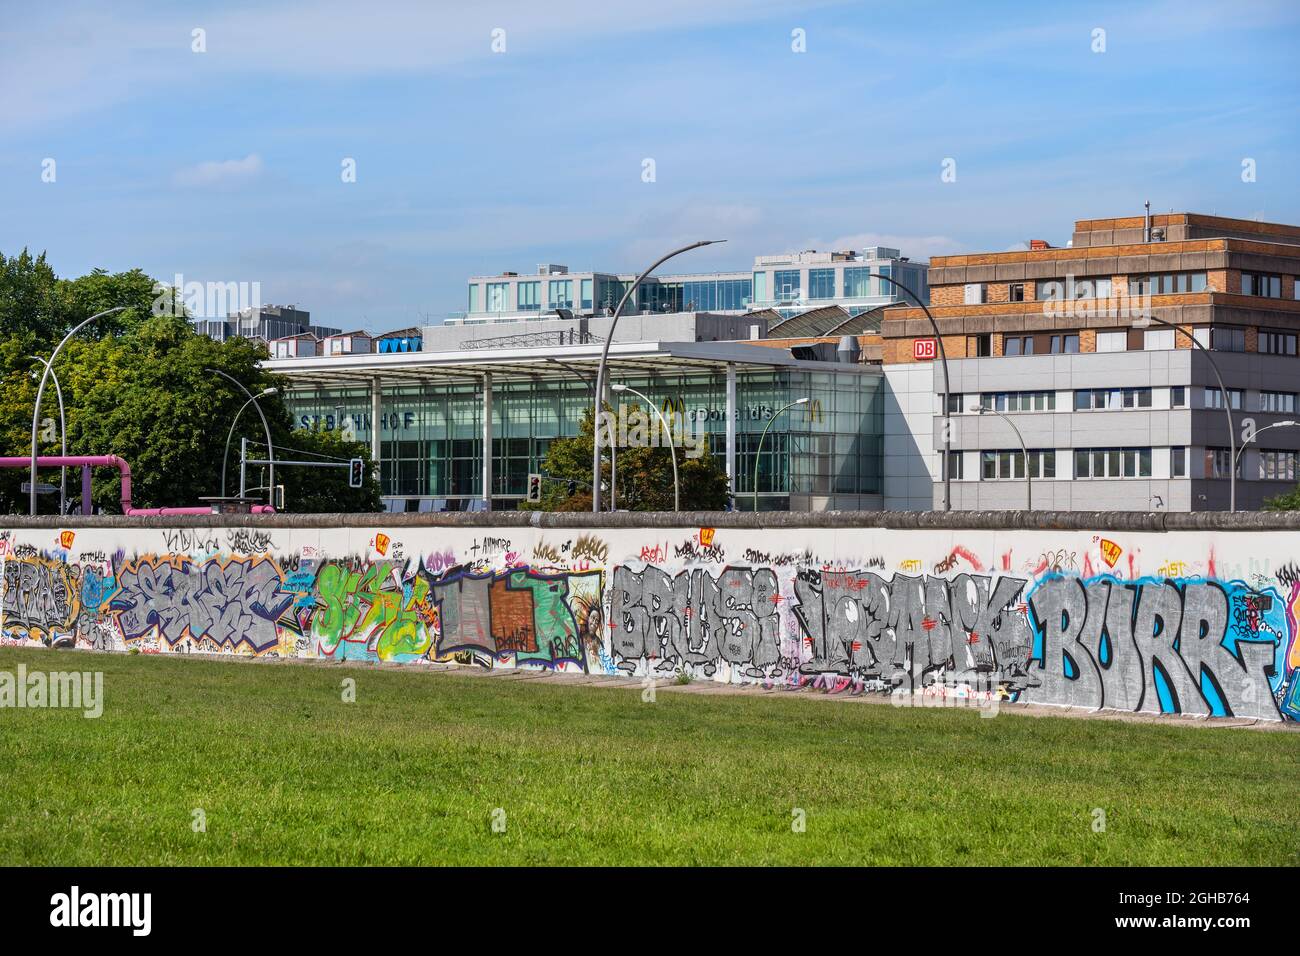 Berlino, Germania - 30 luglio 2021: Muro di Berlino (in tedesco: Berliner Mauer) con ghiaia, lato est, e la stazione ferroviaria di Berlino Ostbahnhof nel backgro Foto Stock